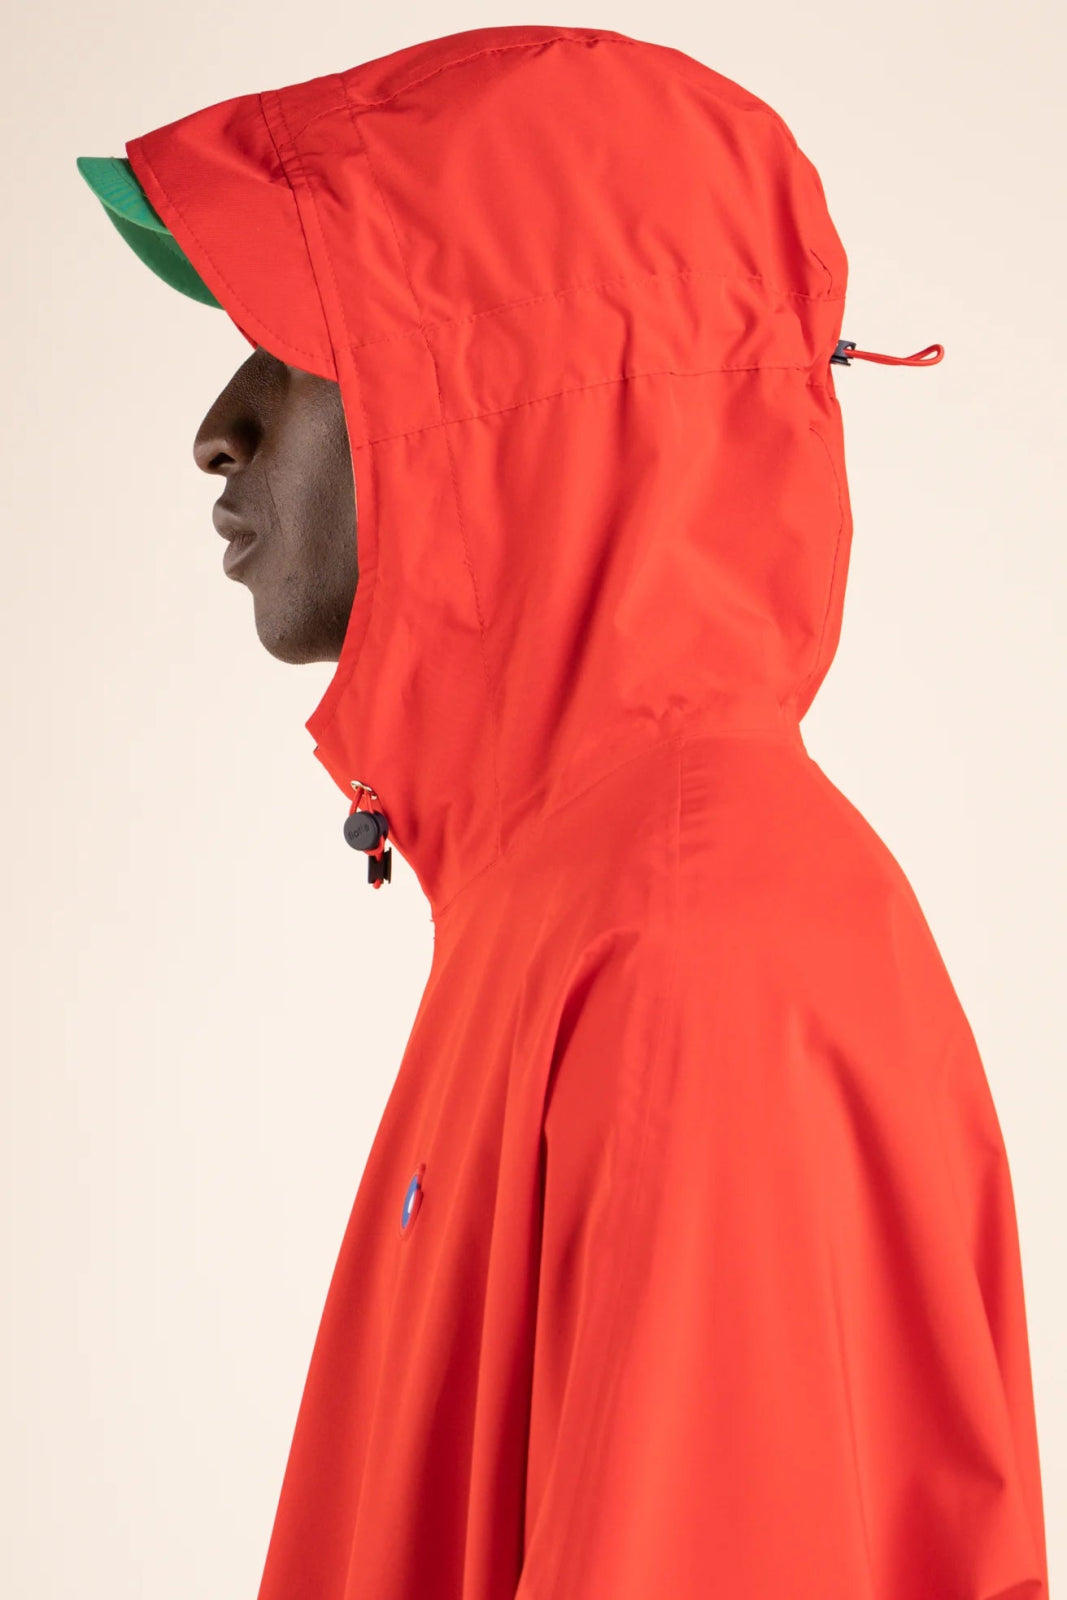 Liberté - Cape de pluie - Veste coupe-vent modulable en sac - Flotte #couleur_rouge